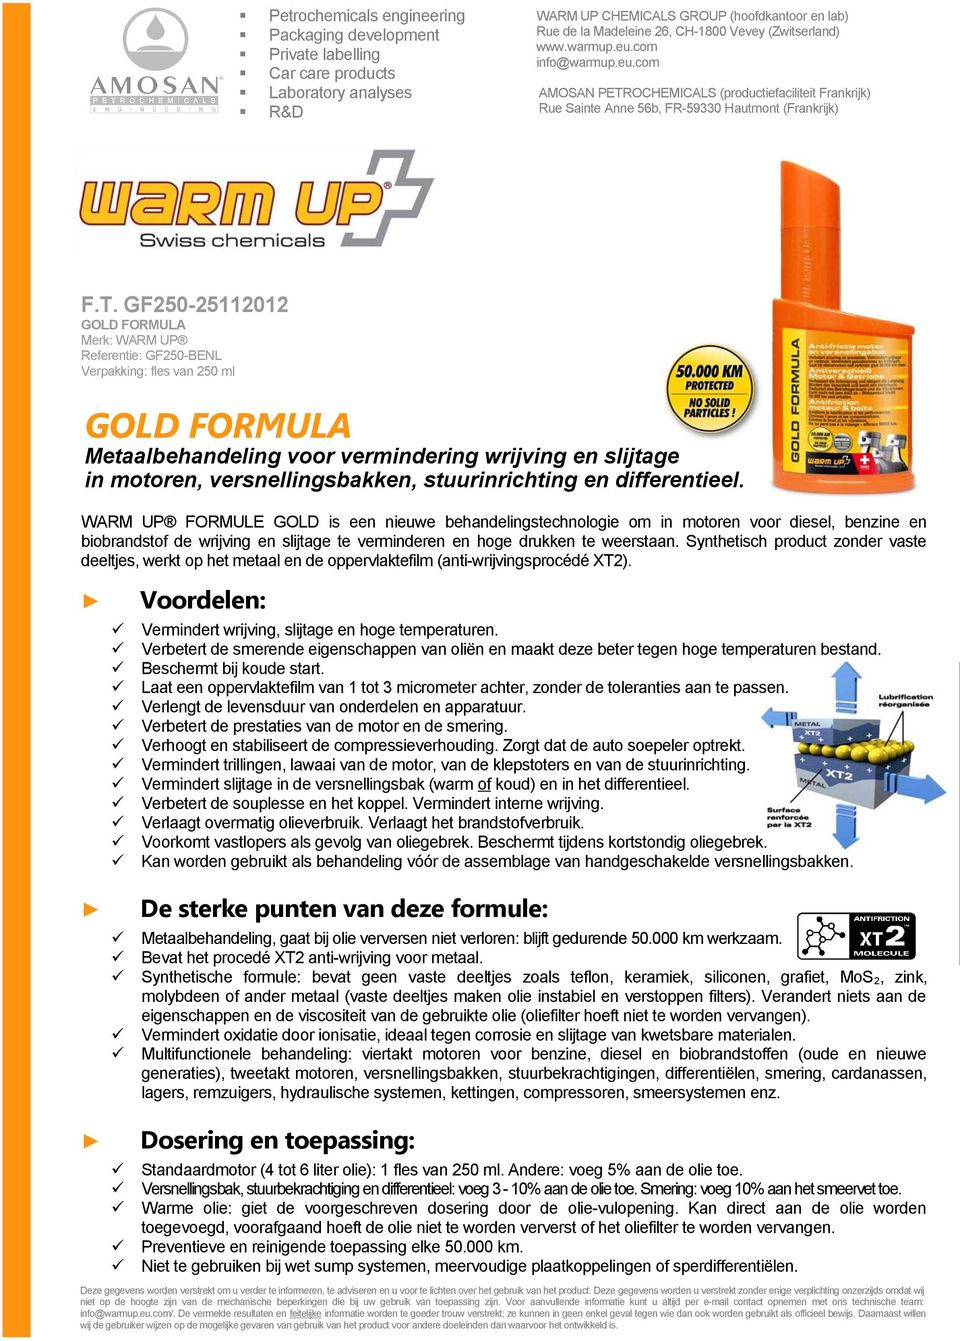 WARM UP FORMULE GOLD is een nieuwe behandelingstechnologie om in motoren voor diesel, benzine en biobrandstof de wrijving en slijtage te verminderen en hoge drukken te weerstaan.